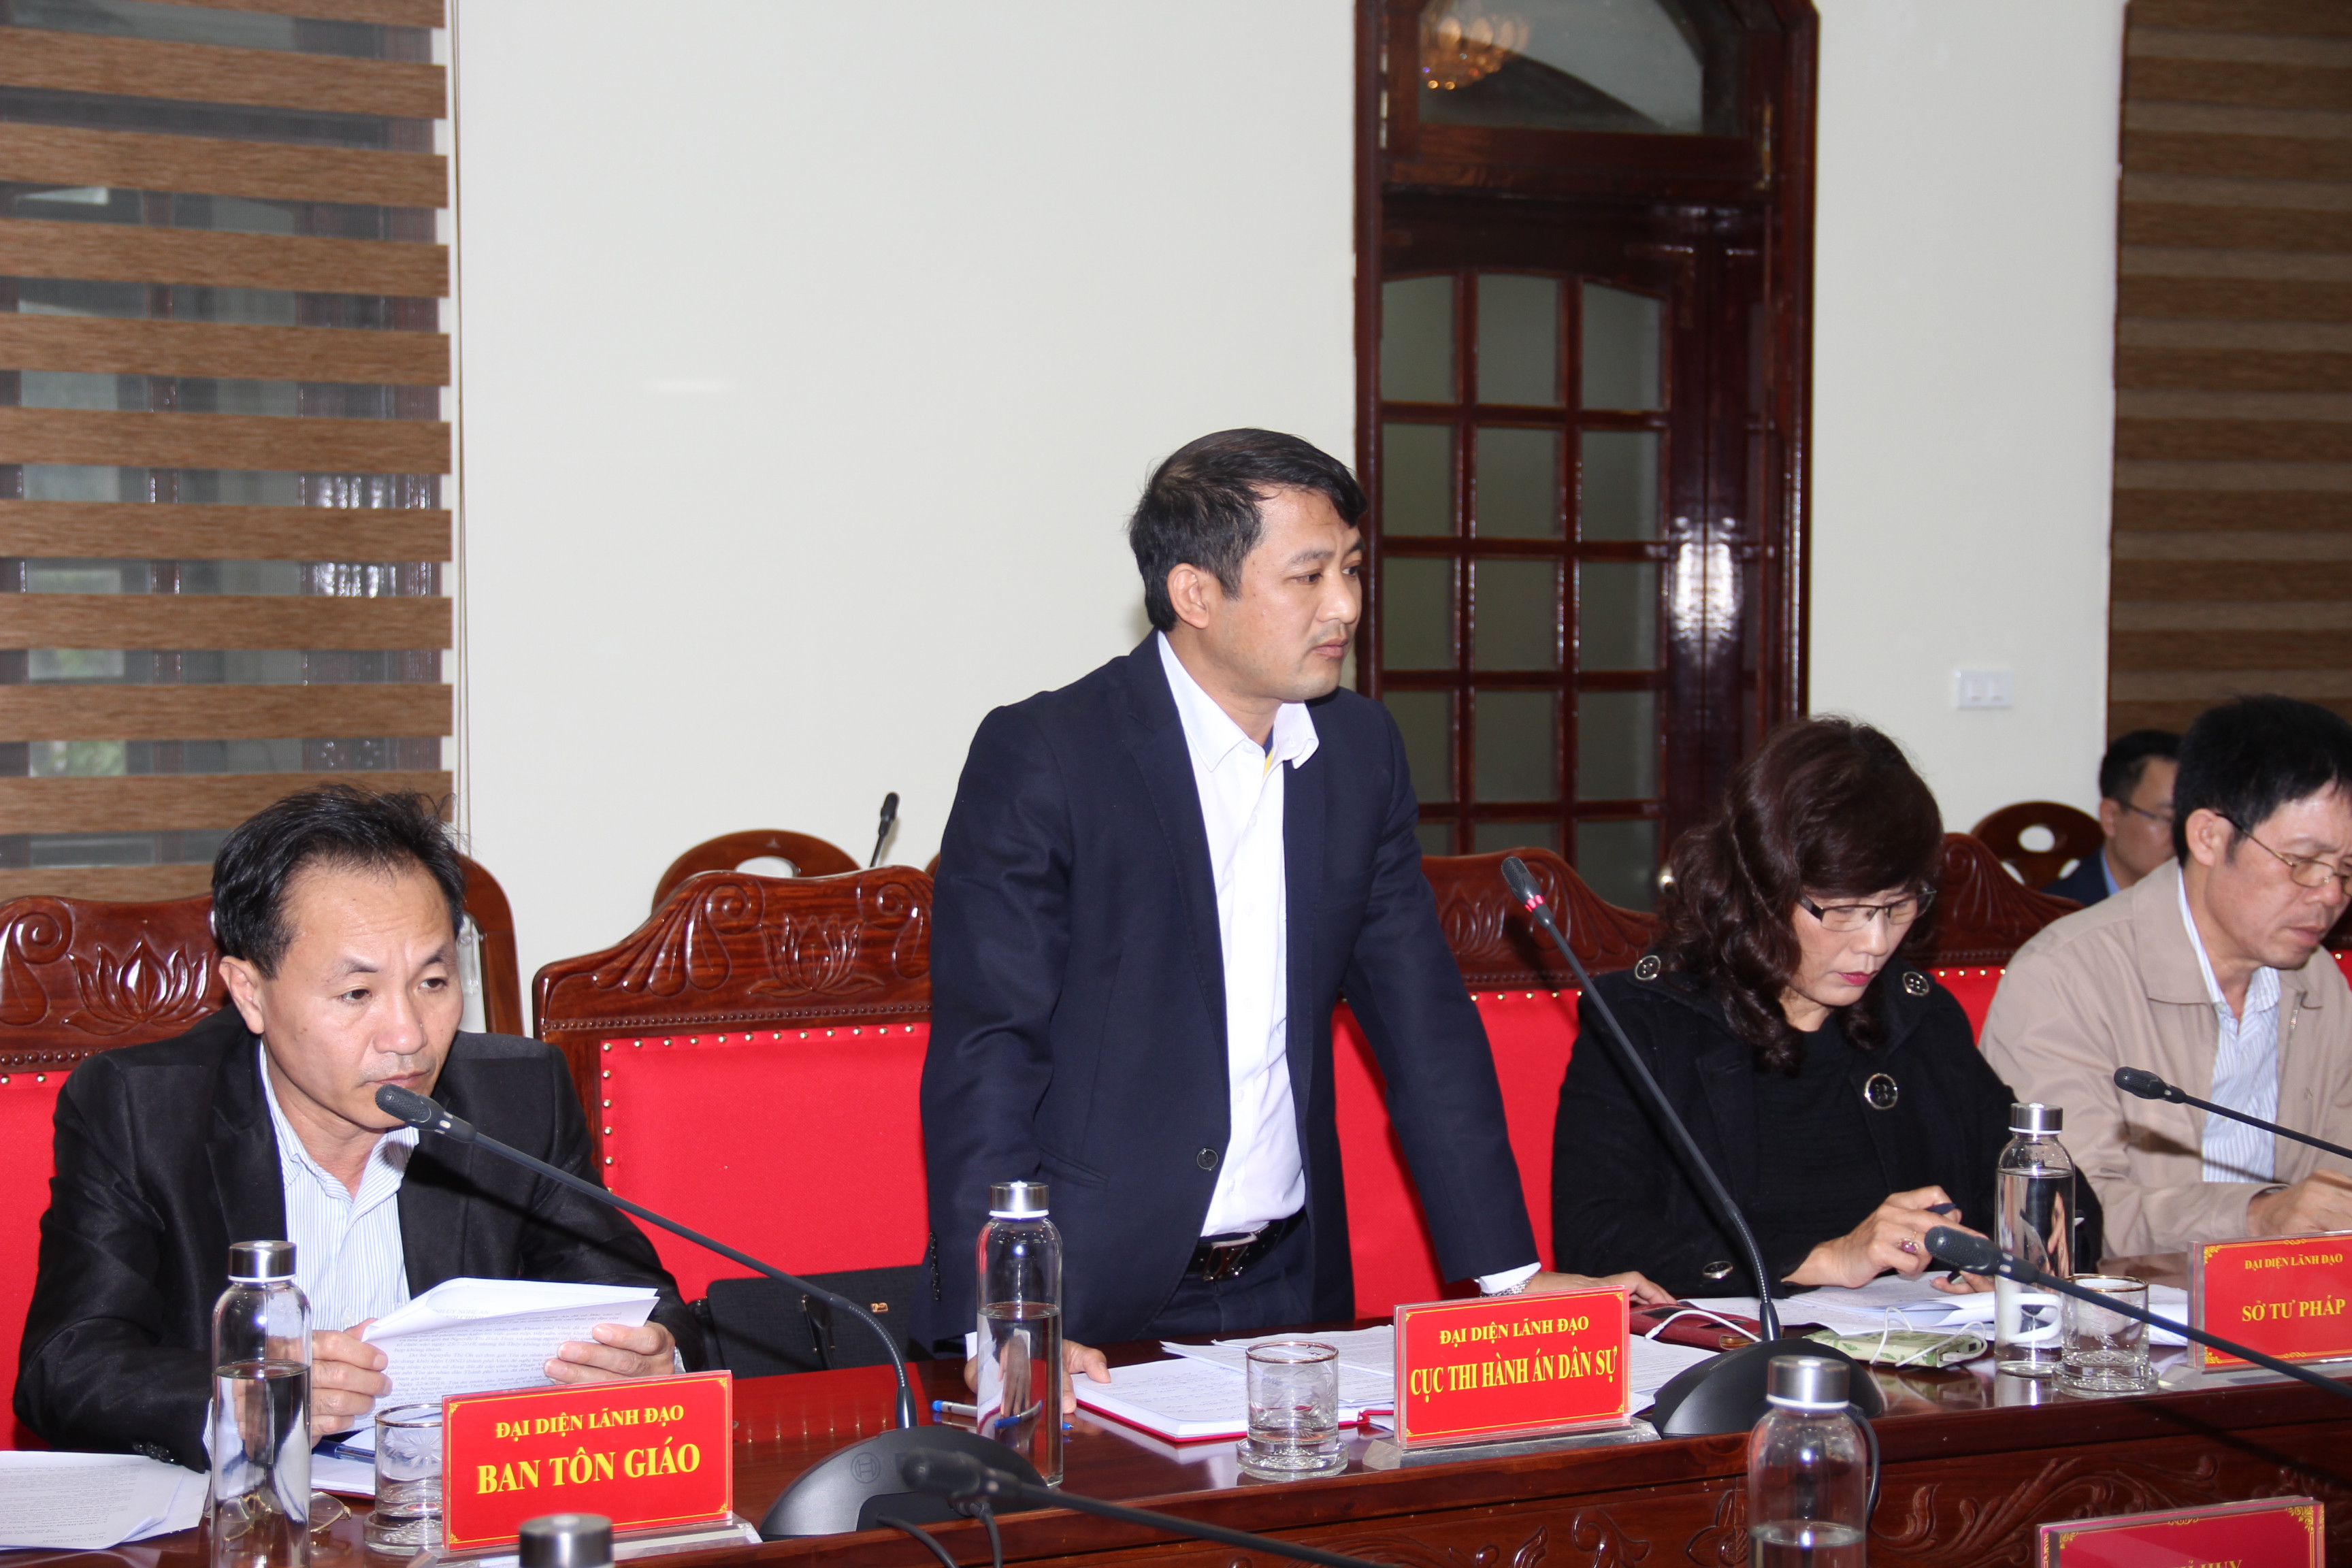 Ông Nguyễn Hoài An - Phó Cục trưởng Cục Thi hành án dân sự tỉnh nêu các ý kiến về xử lý vụ việc thi hành án tại huyện Quỳnh Lưu. Ảnh:Hoài Thu